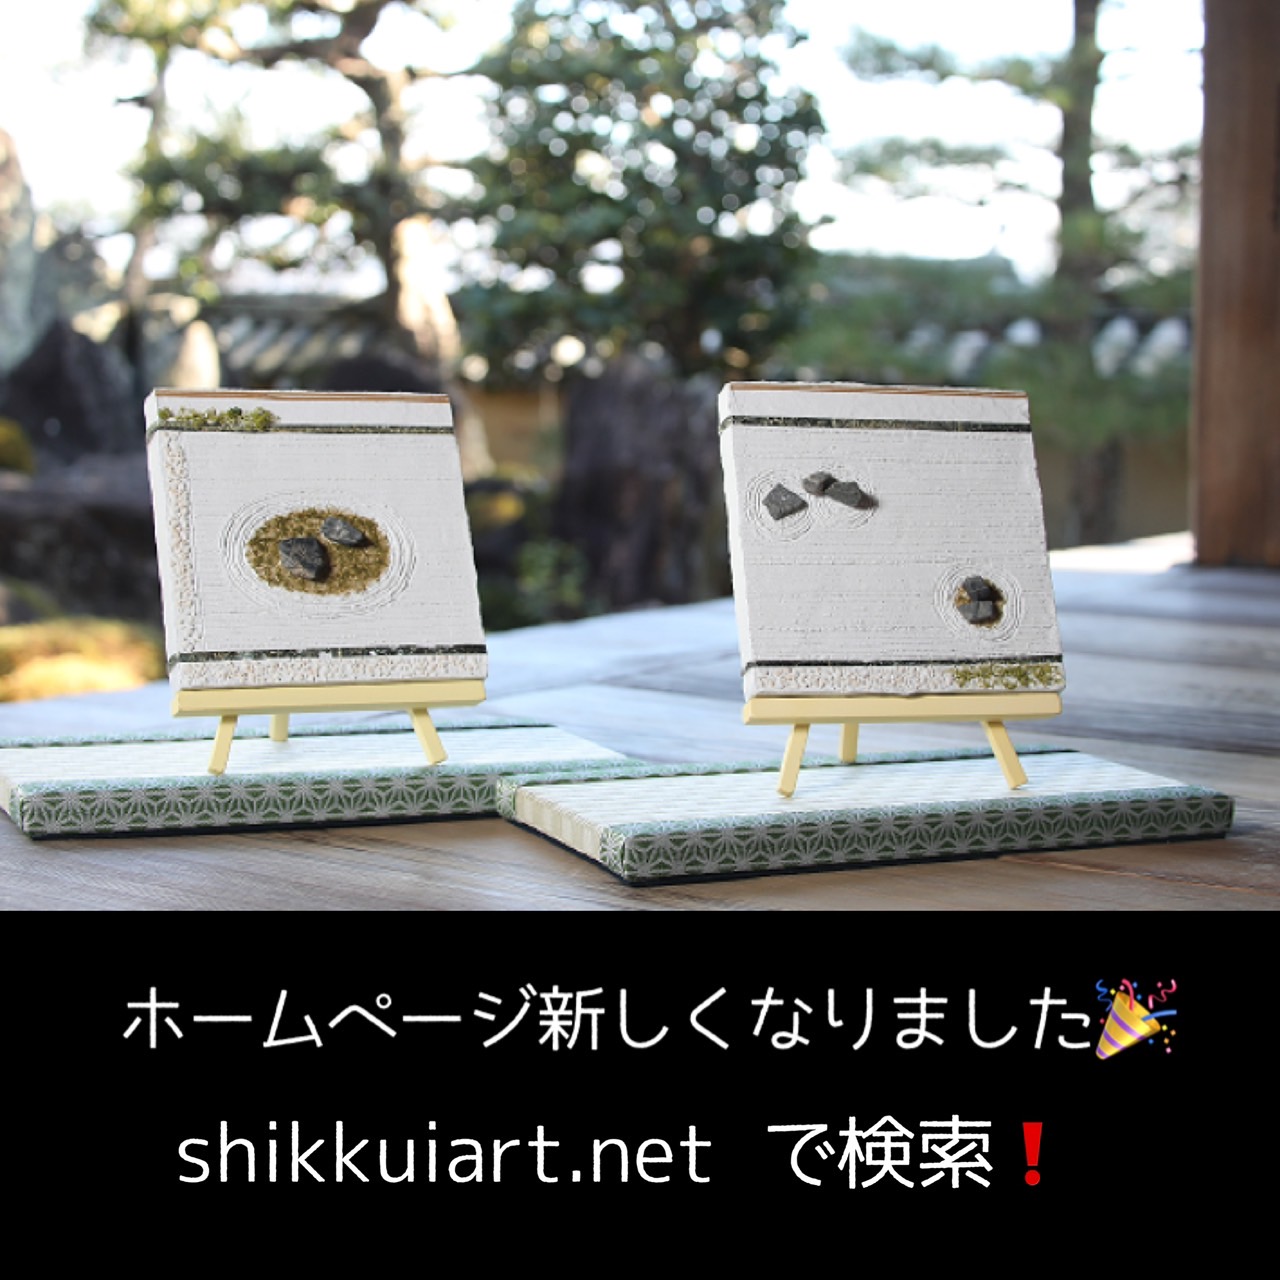 ホームページが新しくなりました！ shikkuiart.net で検索！